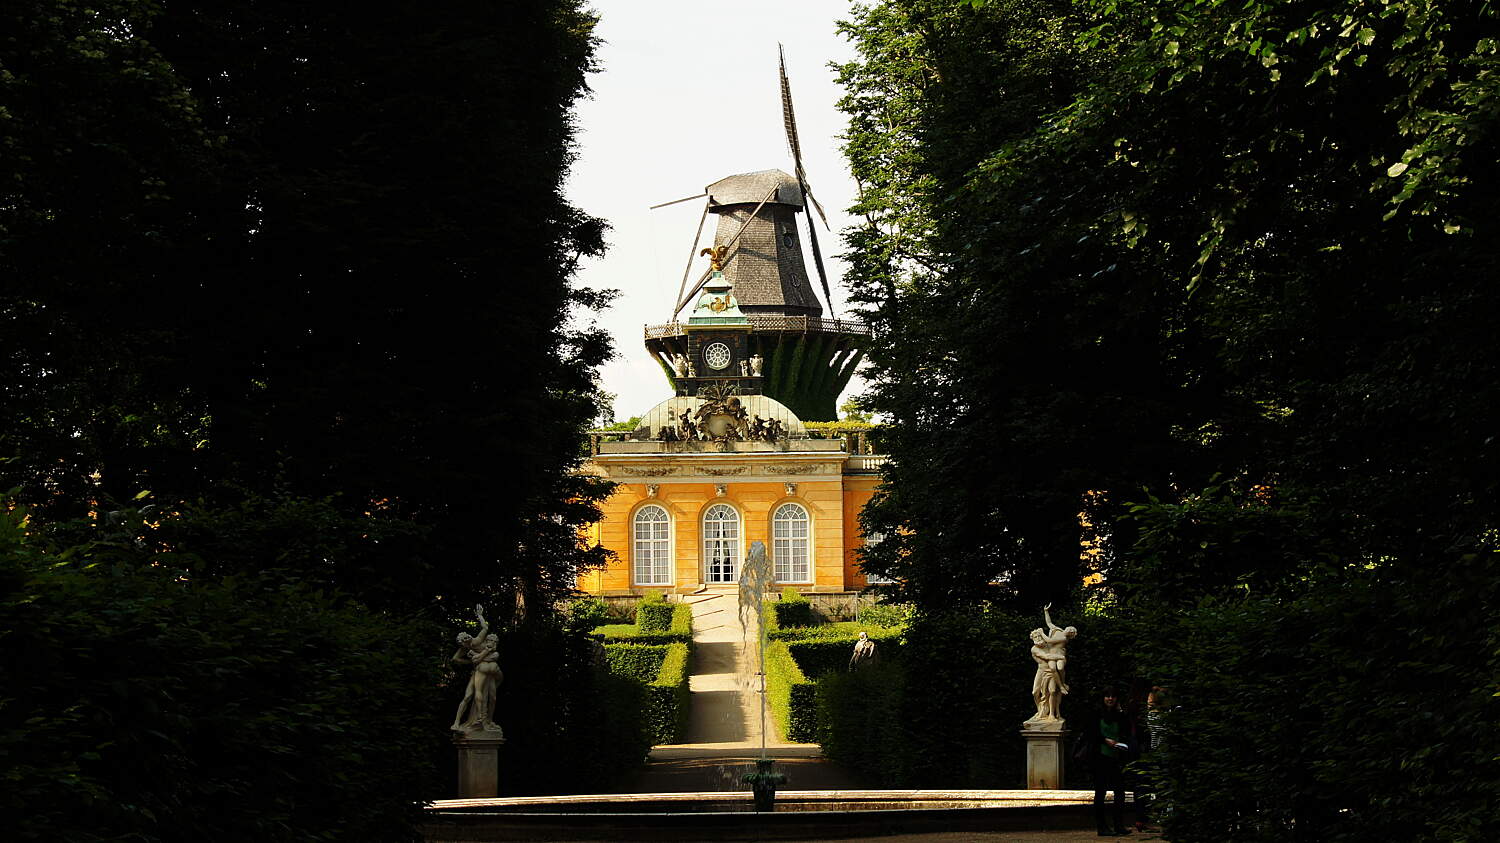 Neuer Garten Potsdam Neu Sanssouci Park – Potsdam – tourist attractions Tropter